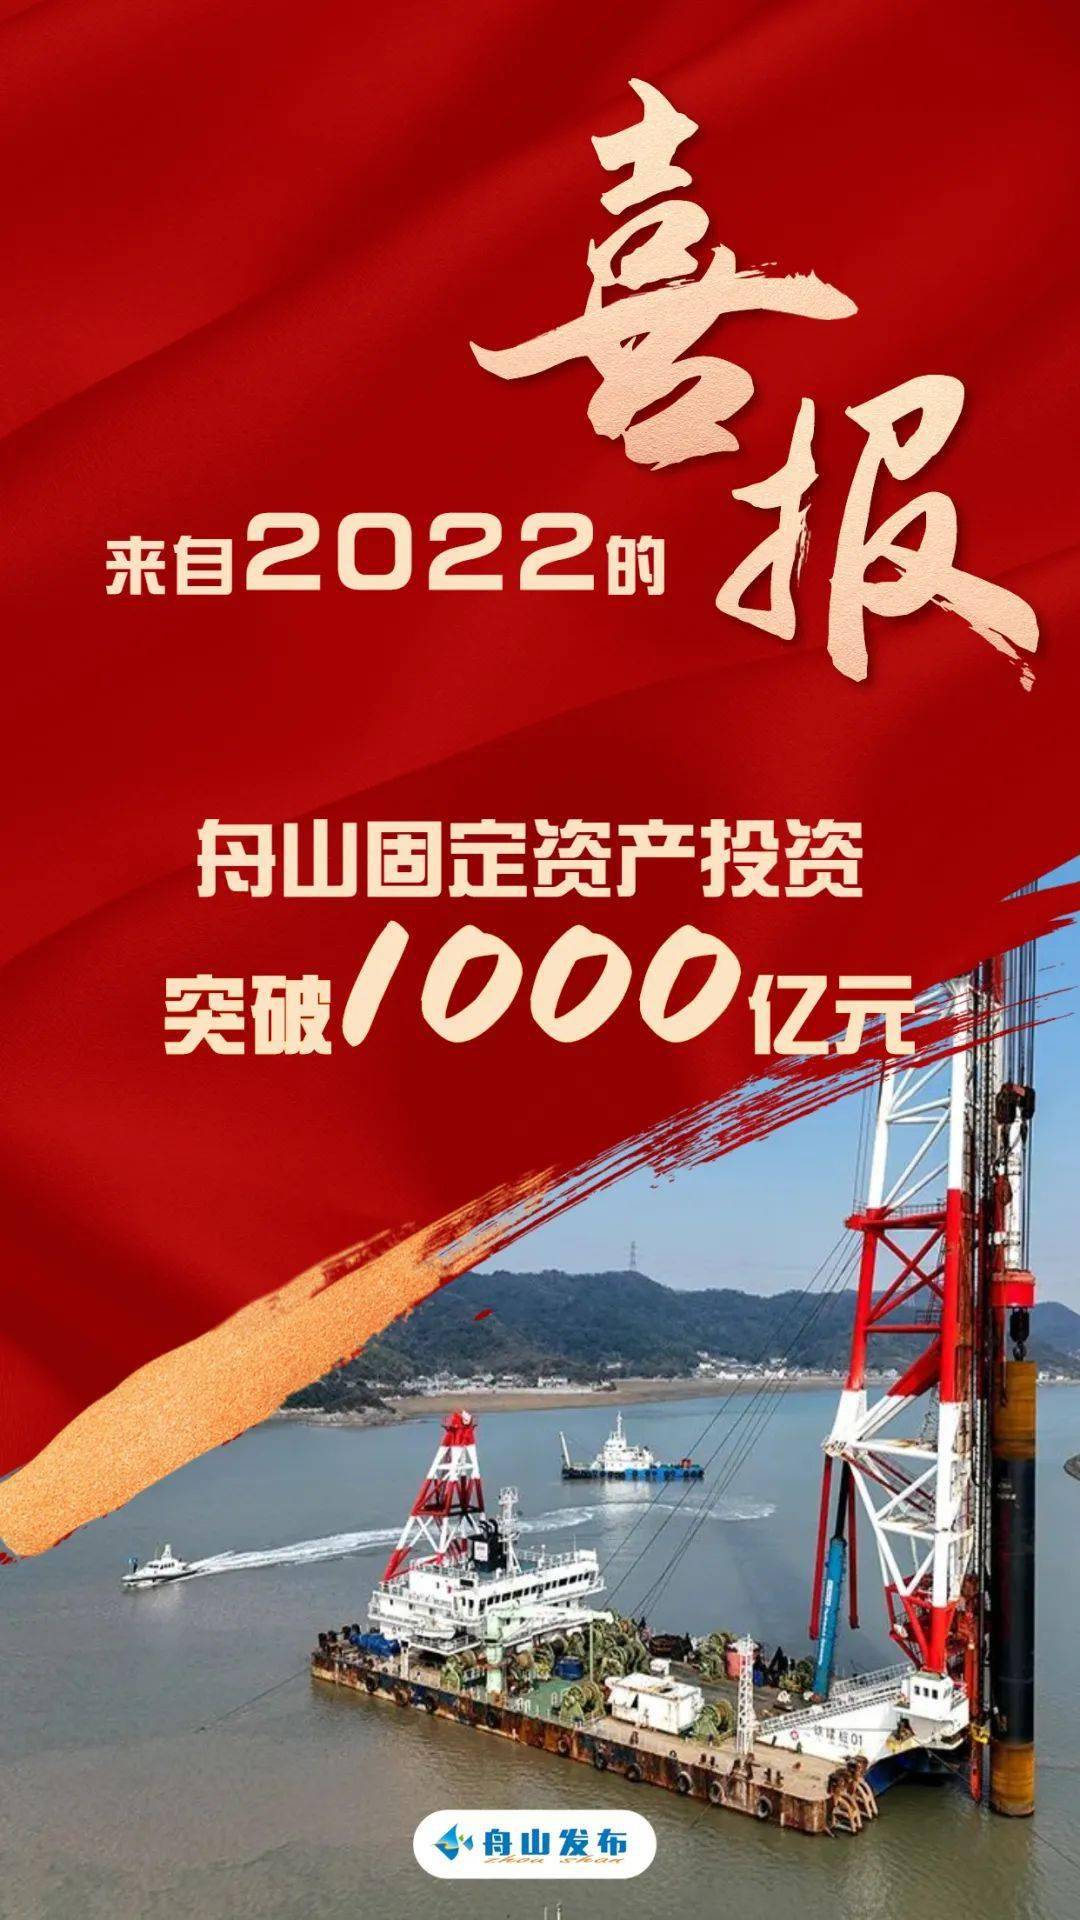 【来自2022的喜报】舟山固定资产投资突破1000亿元！